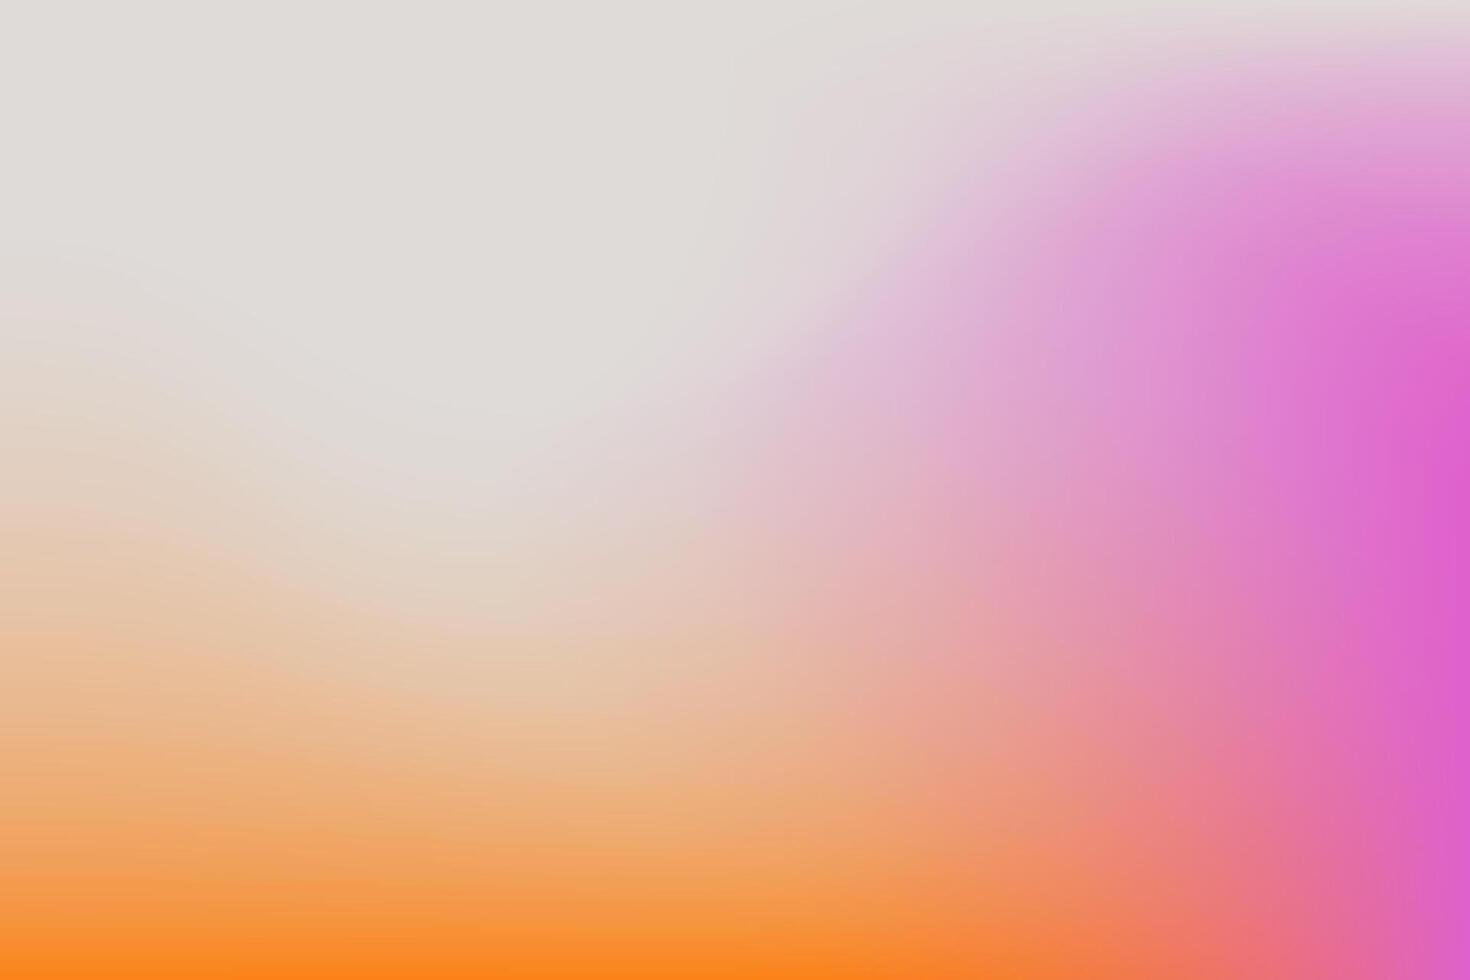 y2k trendig estetisk abstrakt lutning rosa violett bakgrund med genomskinlig suddig mönster. mild social media affisch, berättelser markera mallar för digital marknadsföring för berättelser vektor